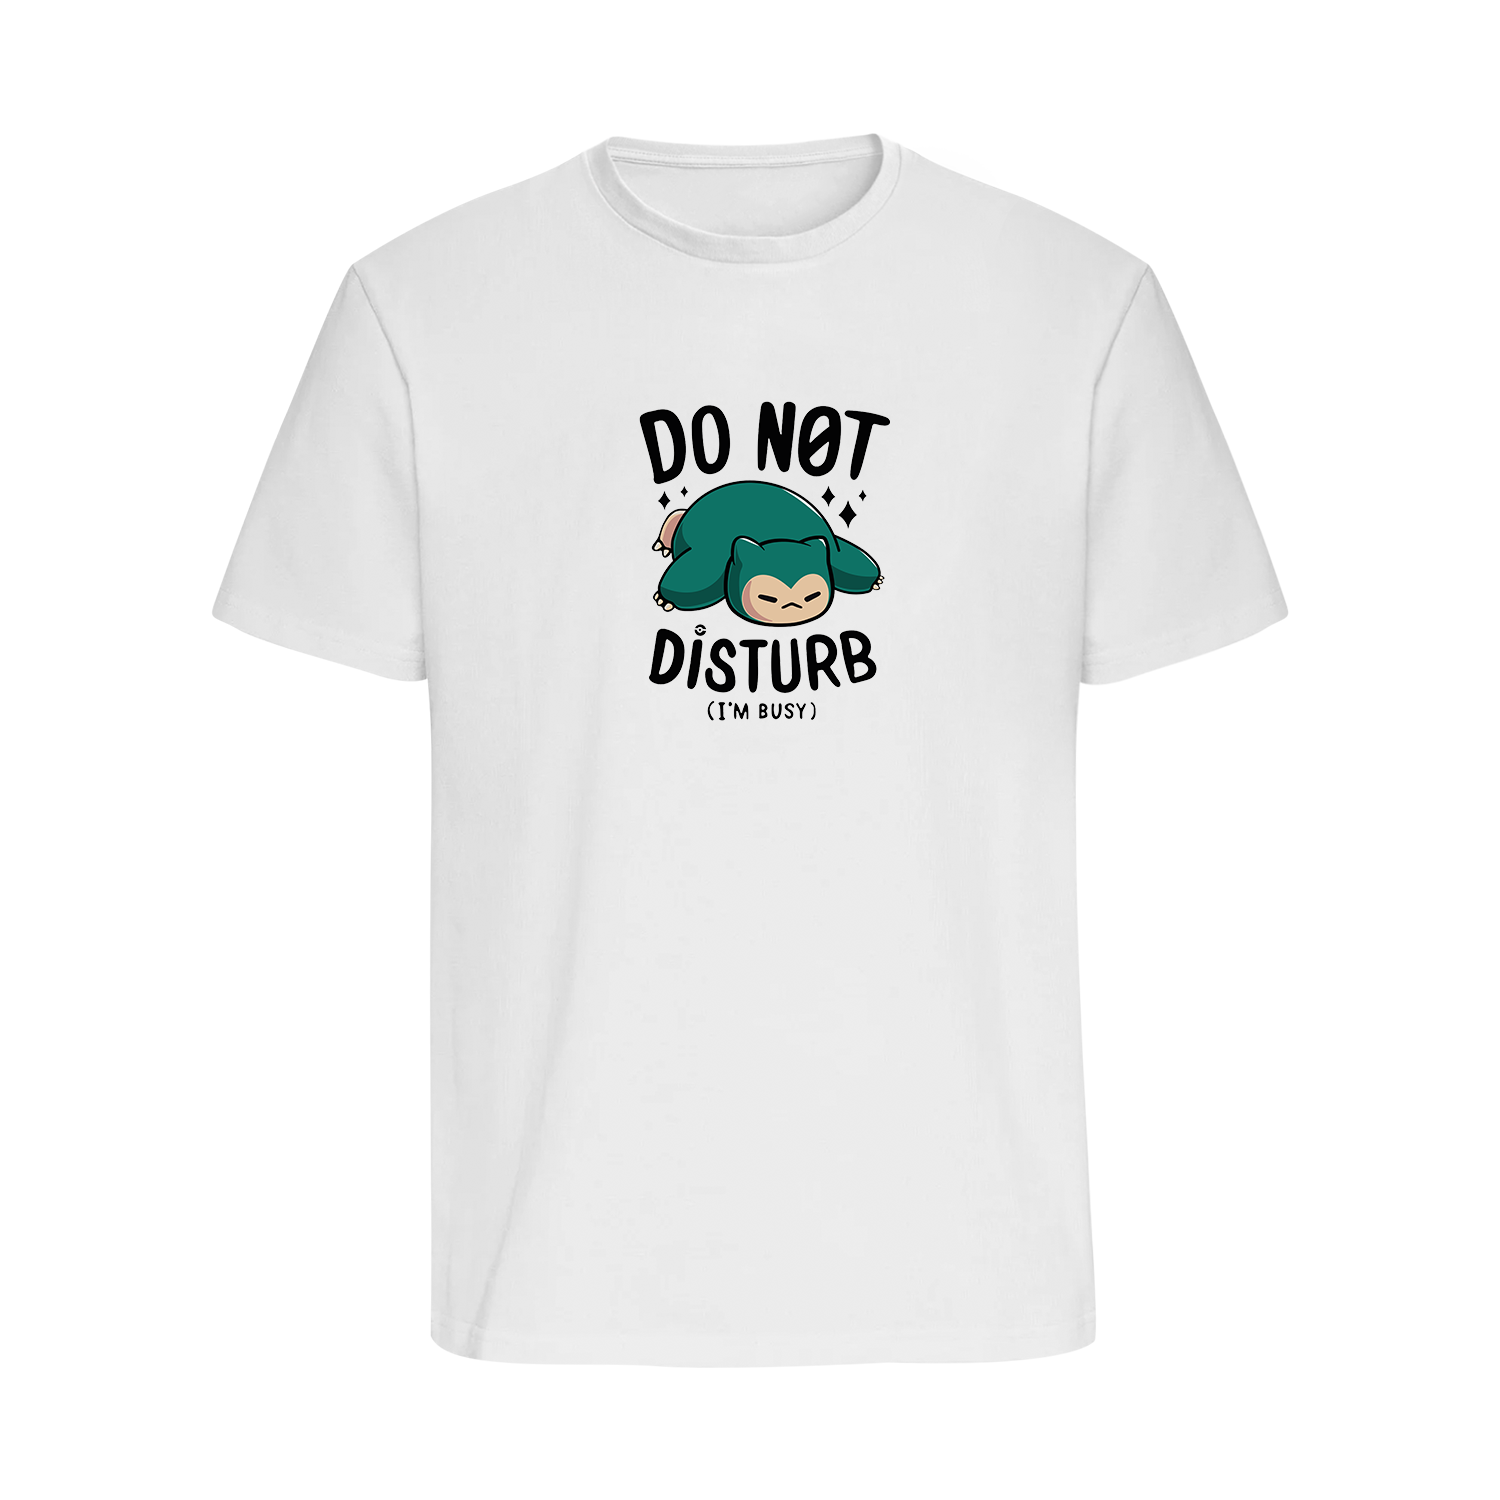 DO NOT DISTURB - Regular T-Shirt